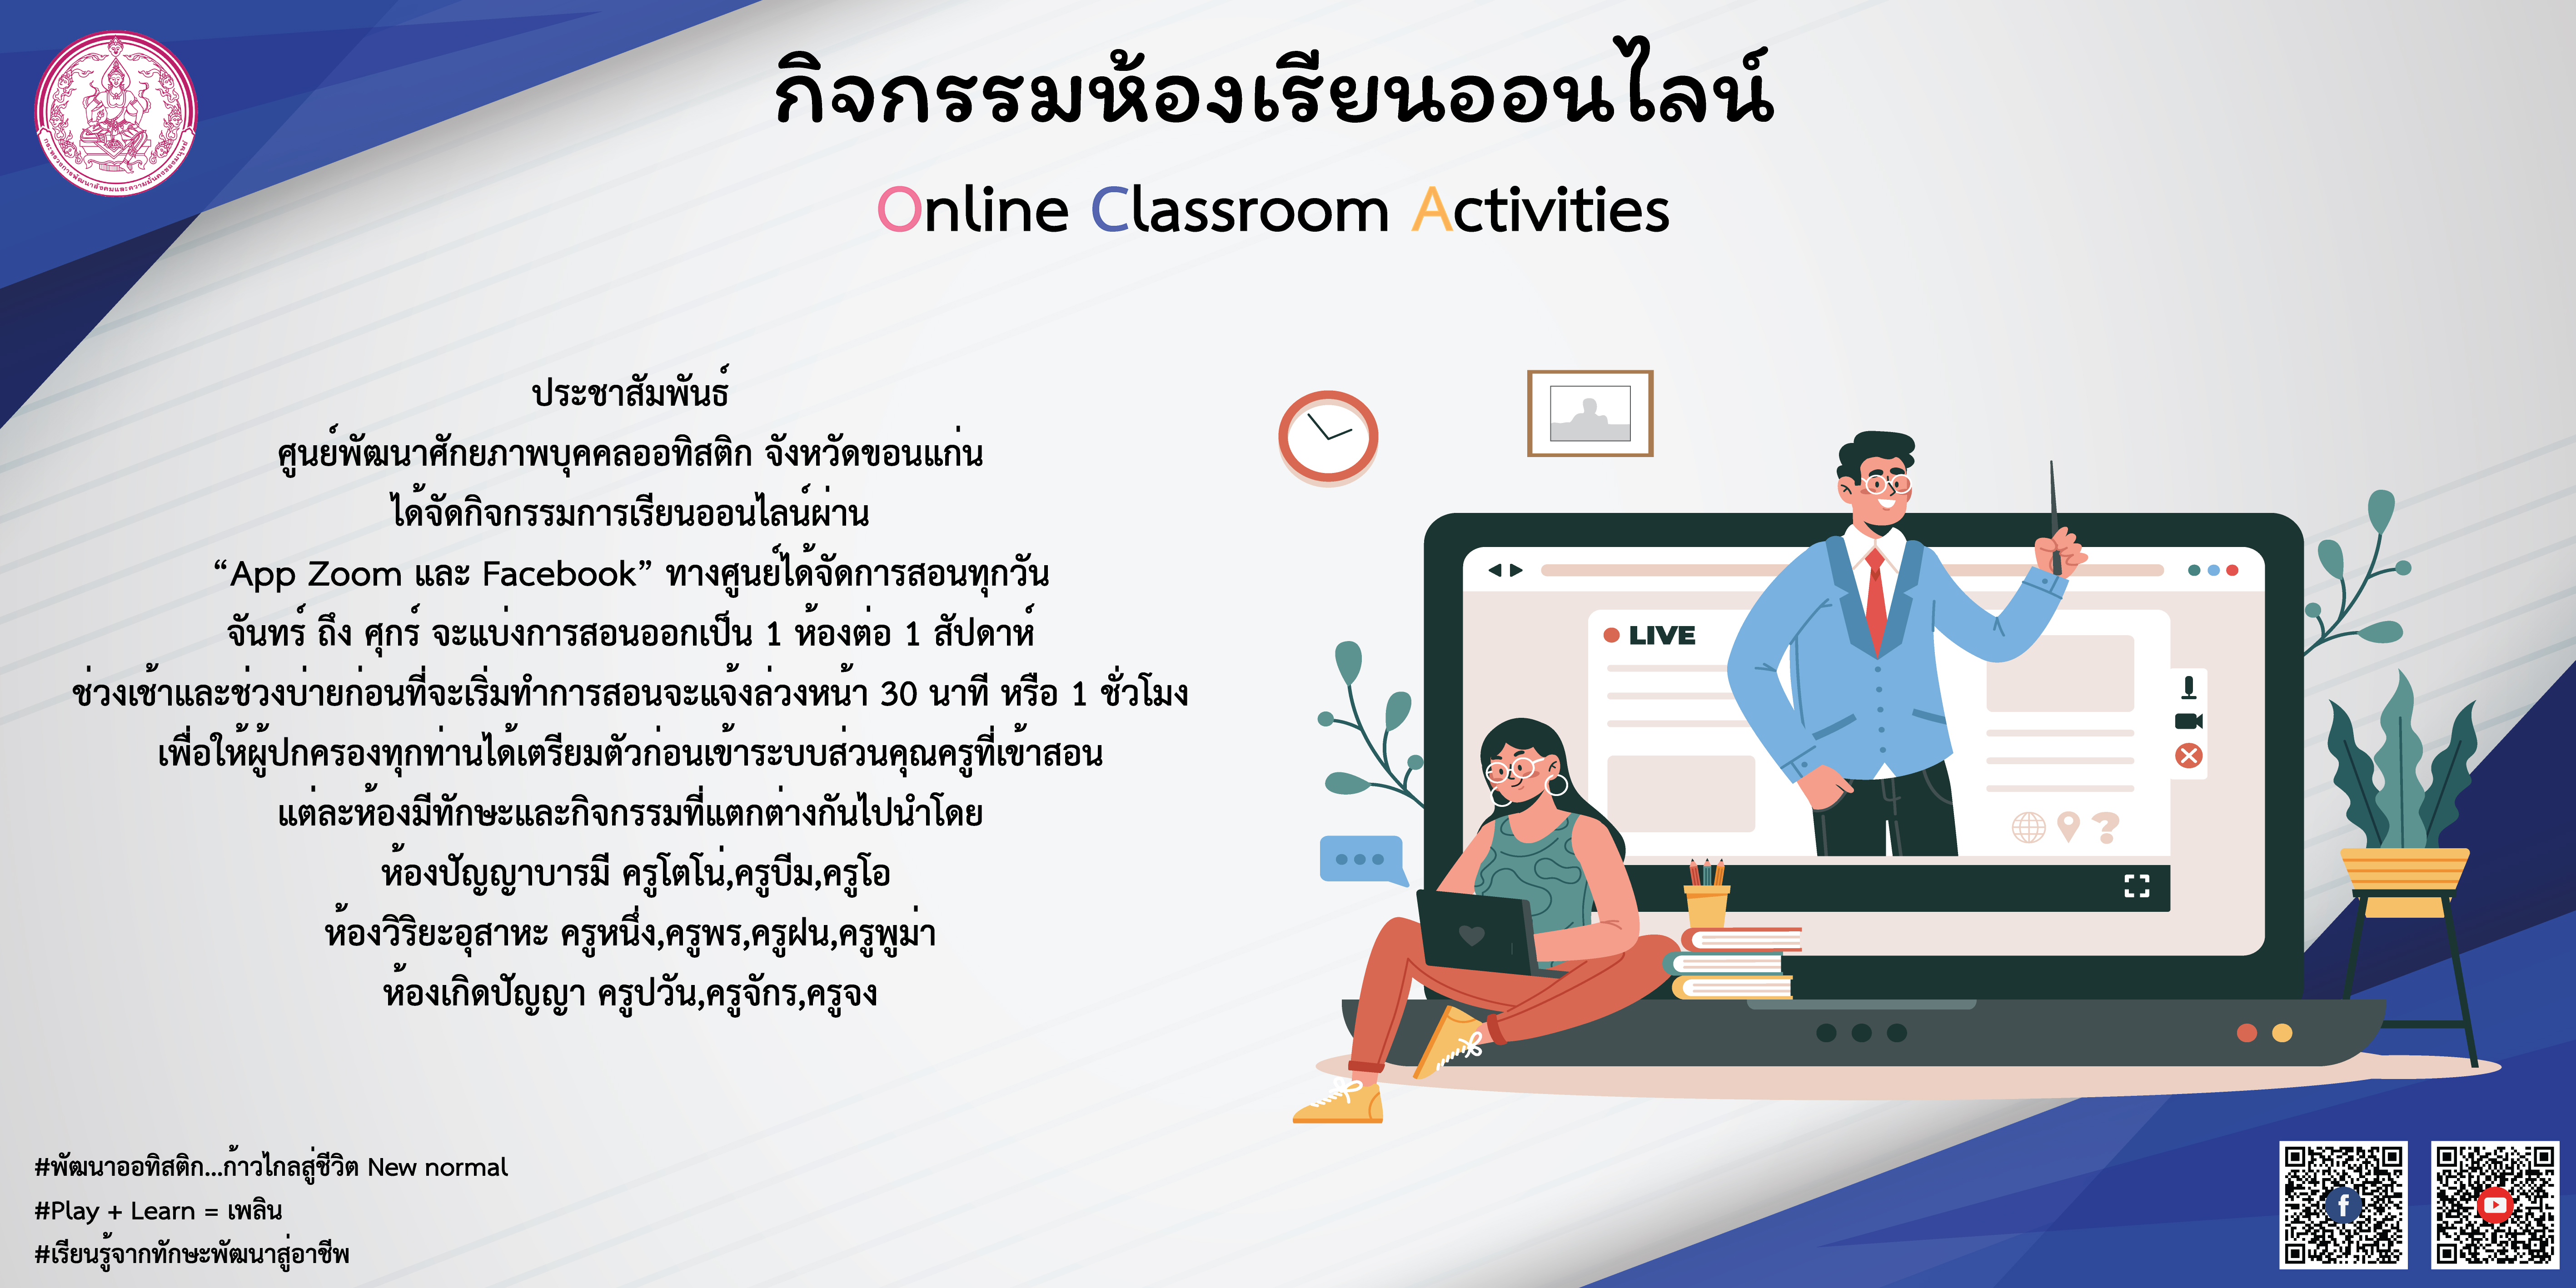 Online classroom activities